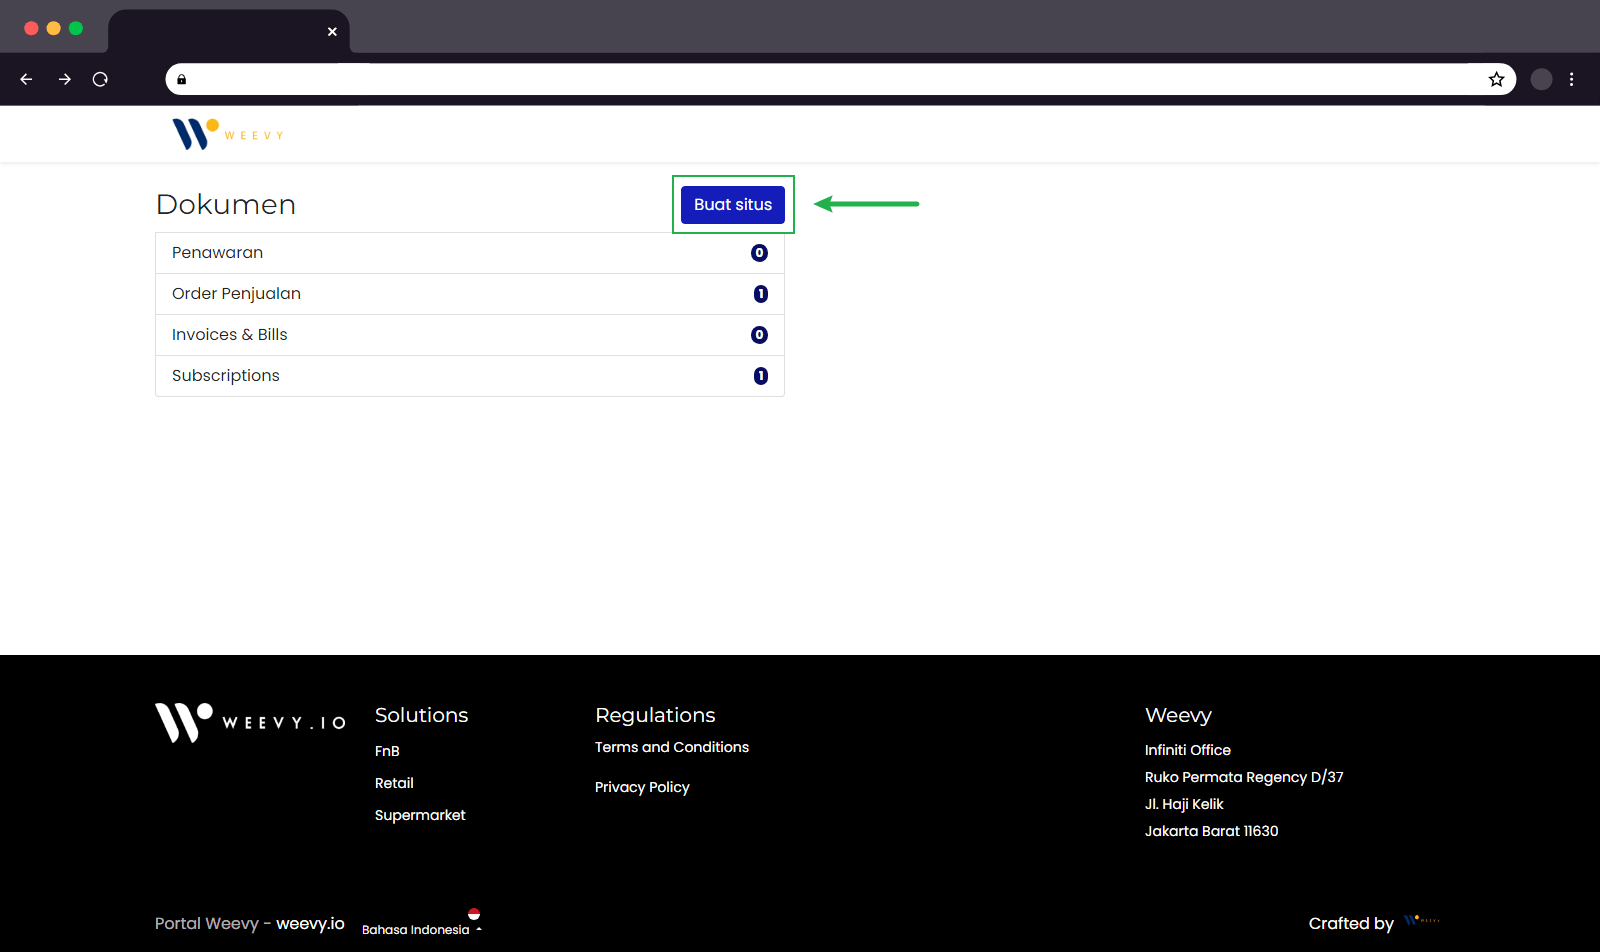 Gunakan tombol biru "Buat situs" untuk memulai langkah pembuatan situs Weevy